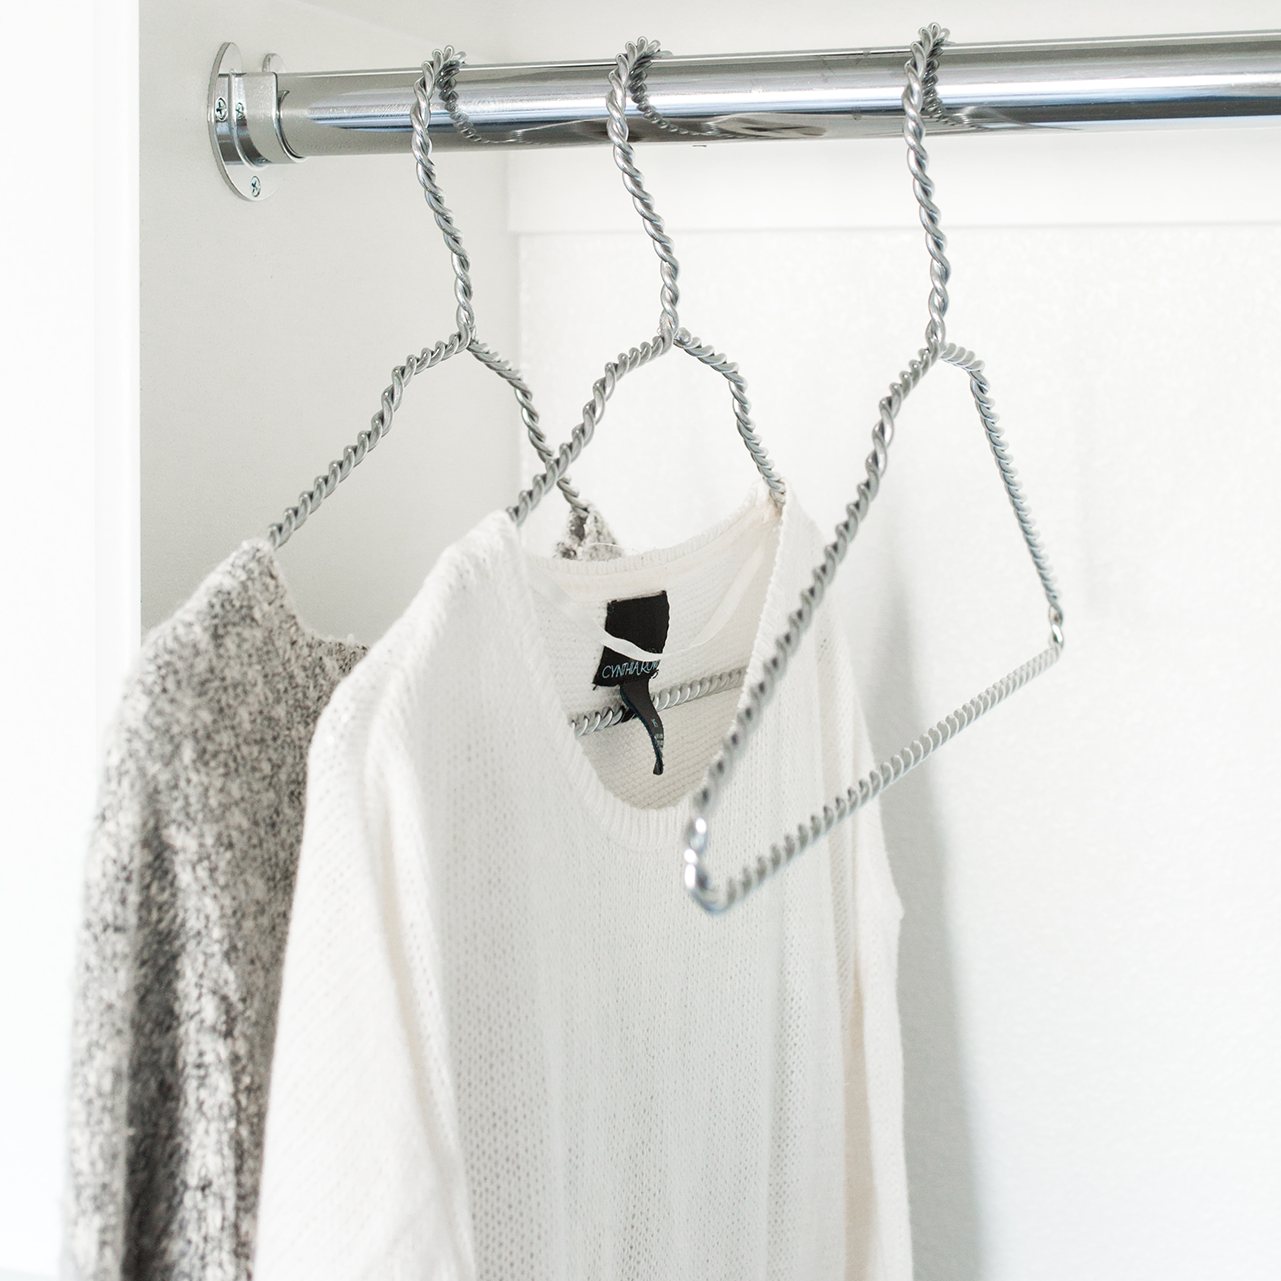 Braided Hanger – Chrome